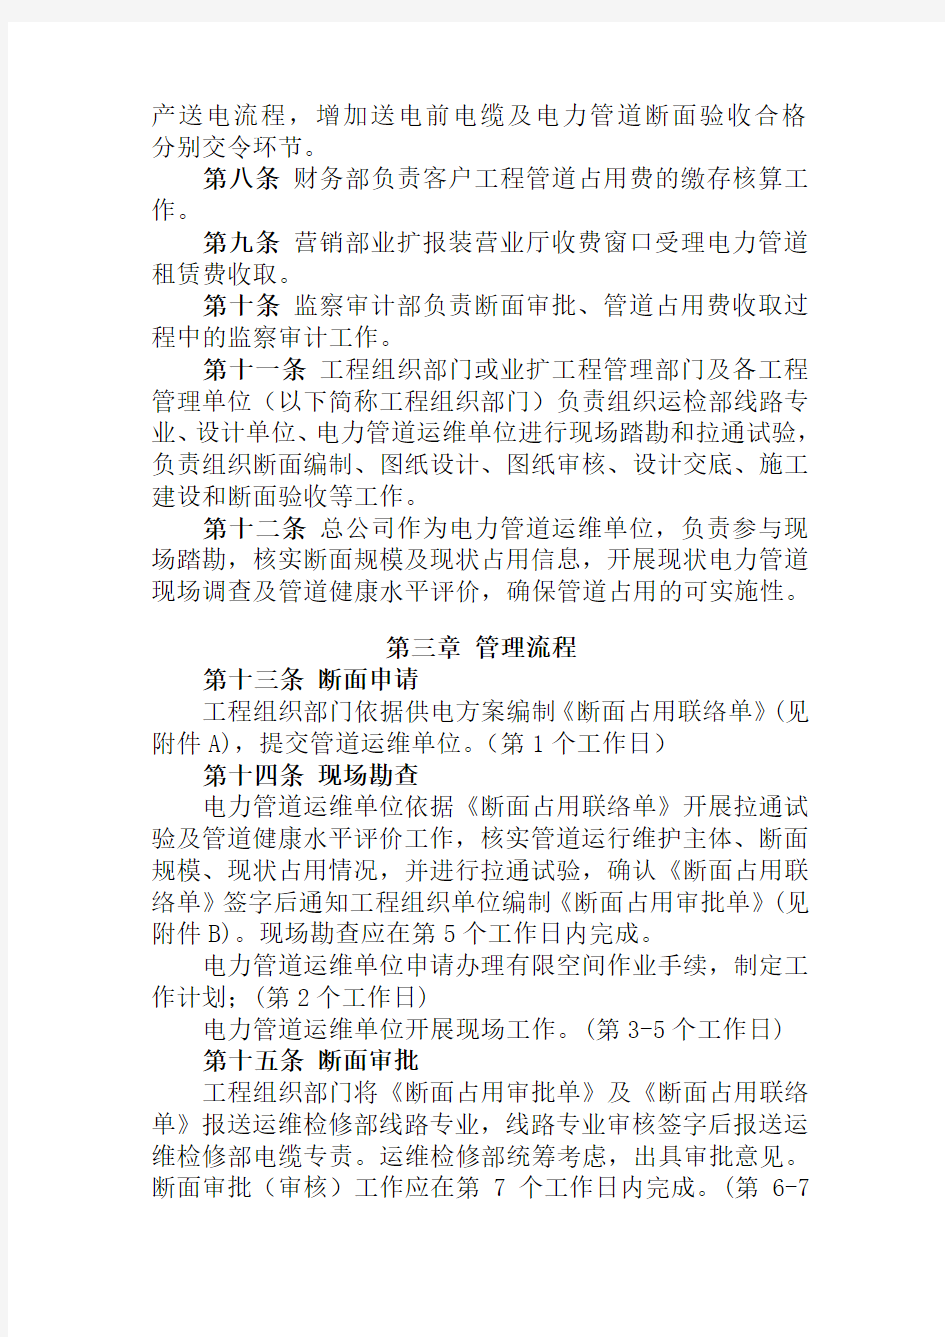 国网北京城区供电公司电力管道断面管理实施细则